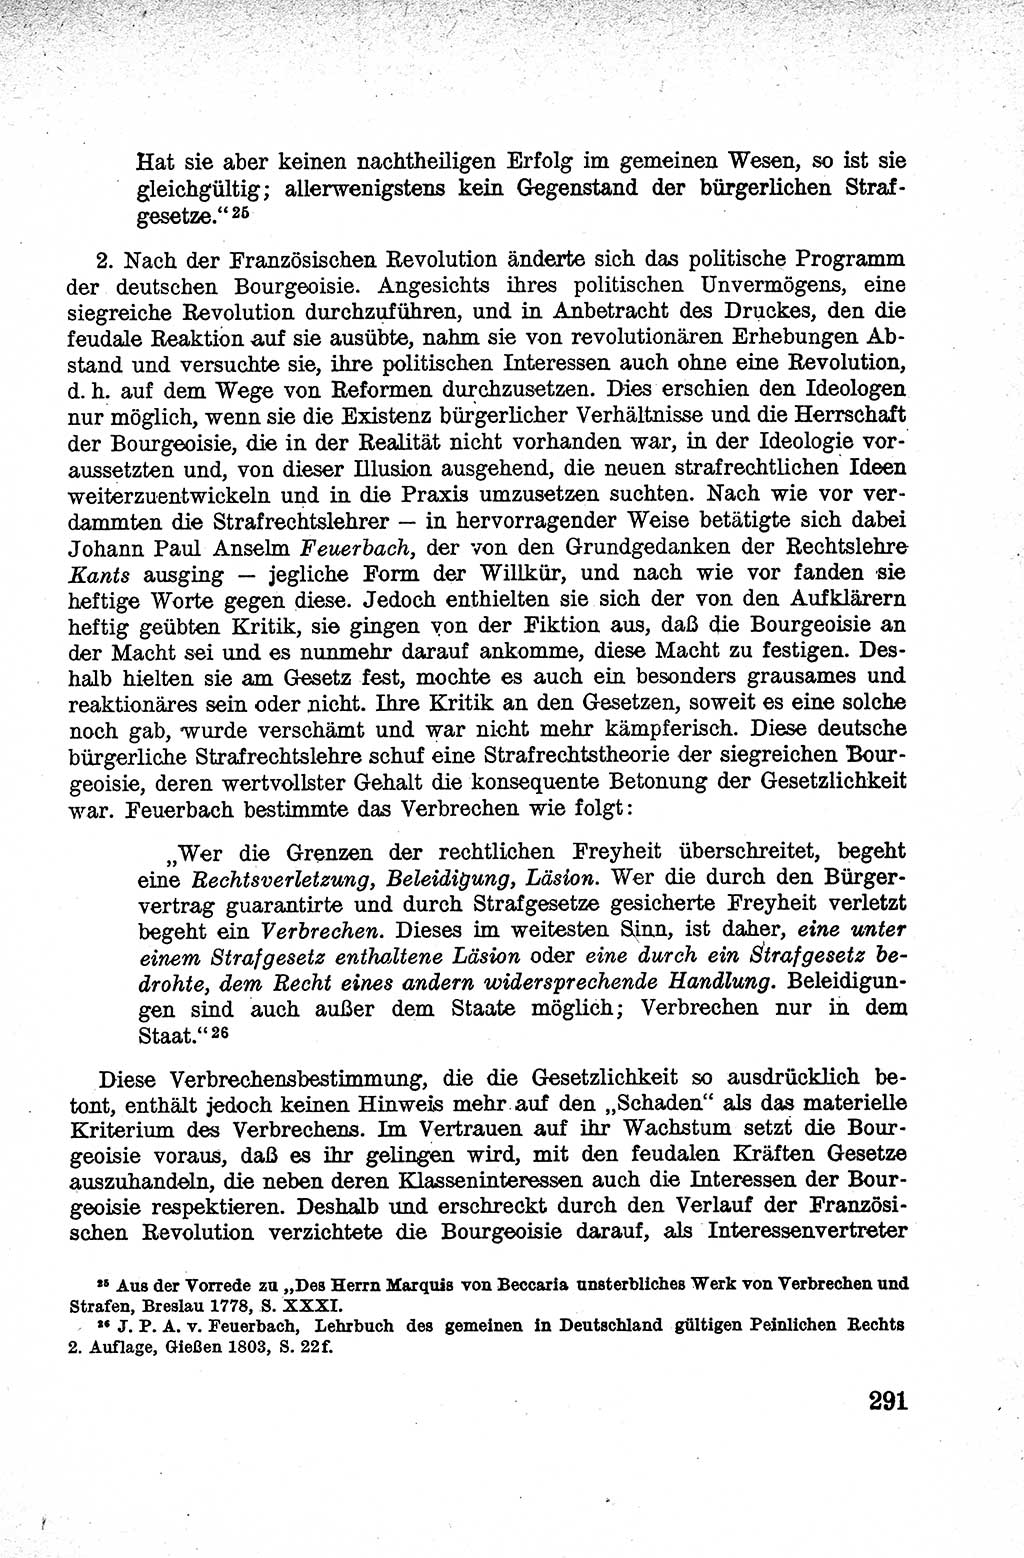 Lehrbuch des Strafrechts der Deutschen Demokratischen Republik (DDR), Allgemeiner Teil 1959, Seite 291 (Lb. Strafr. DDR AT 1959, S. 291)